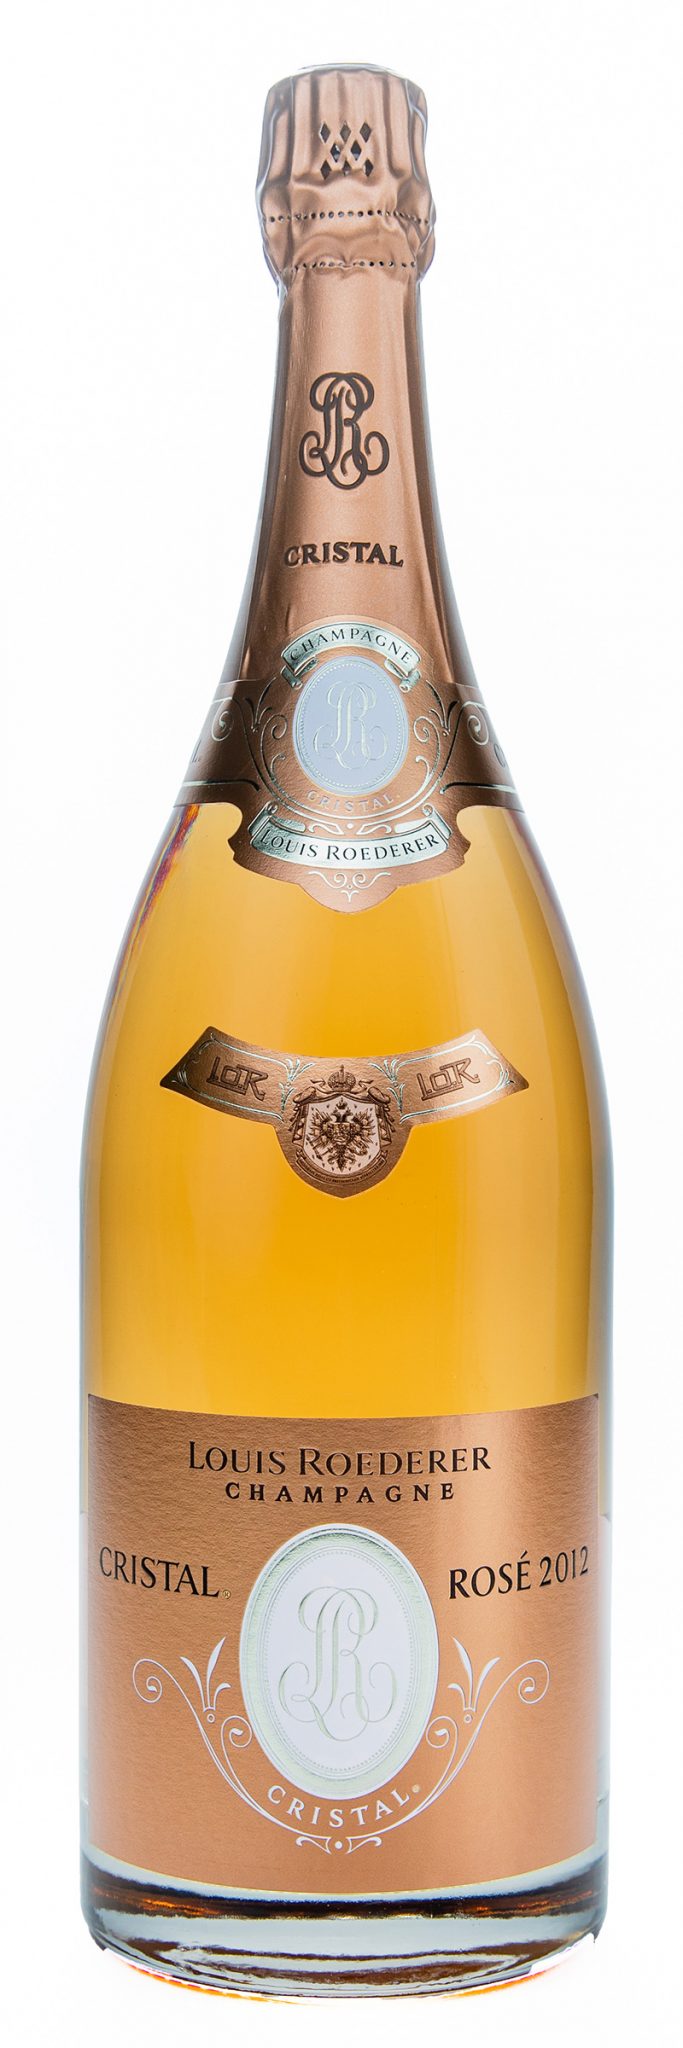 2012 Louis Roederer Vintage Champagne Cristal Rose 1.5L